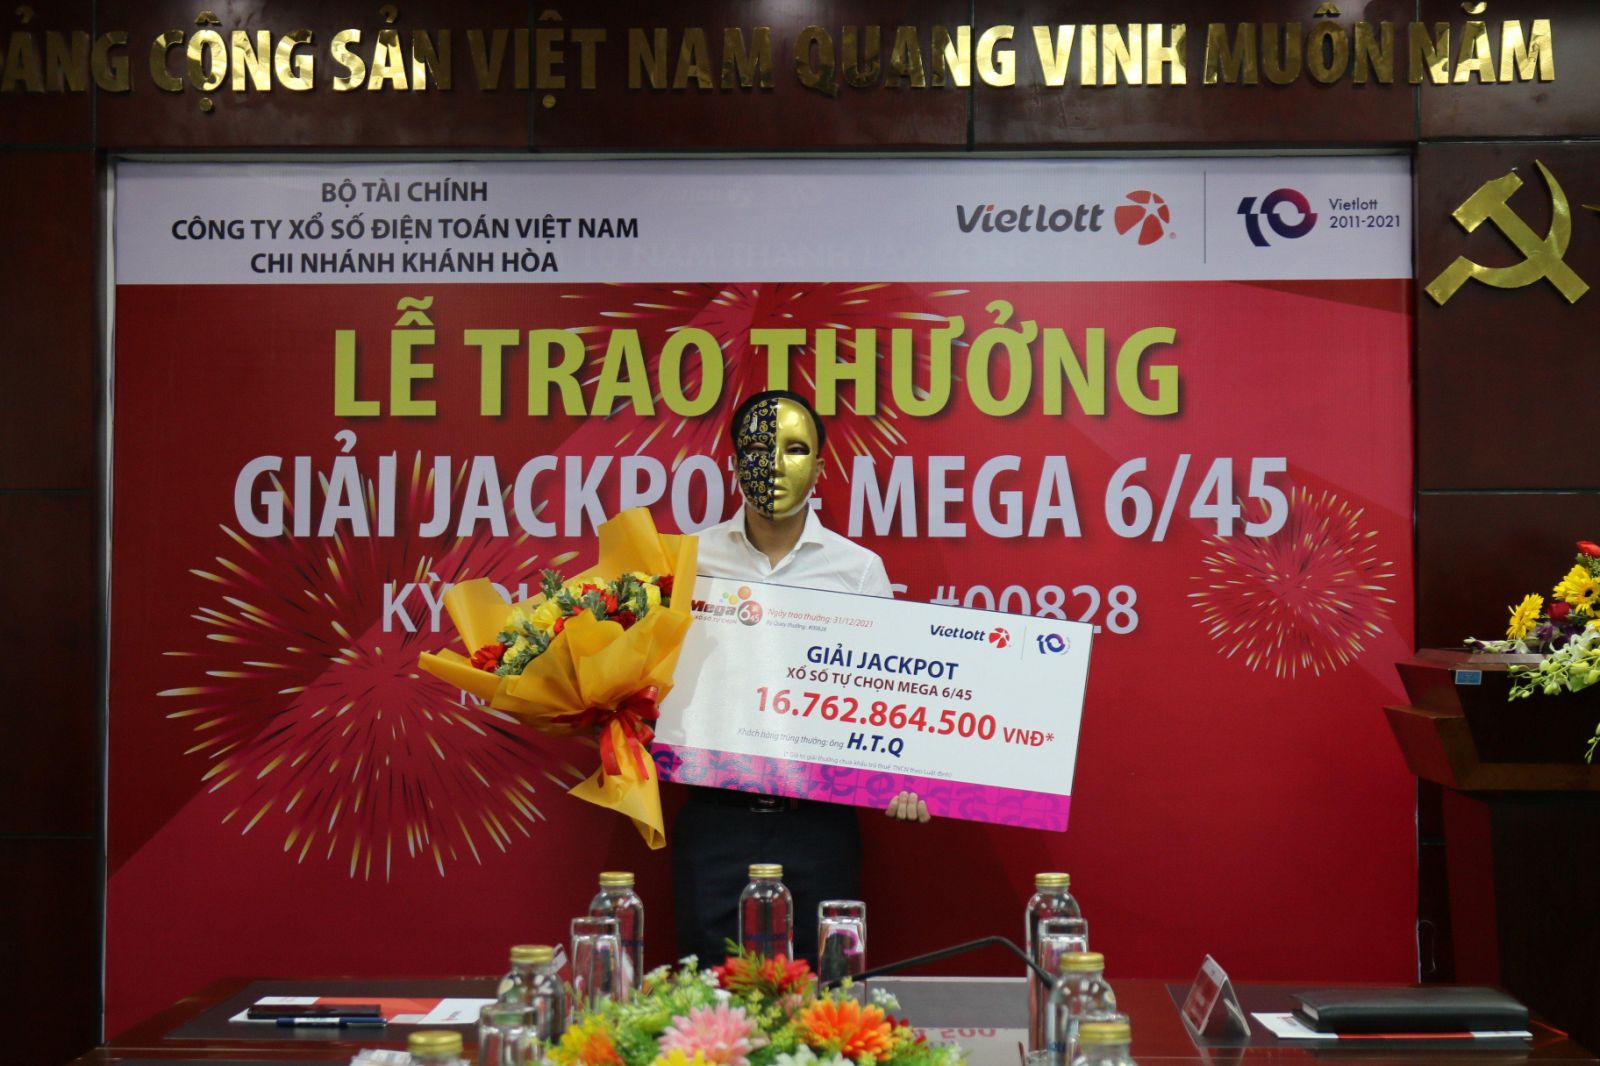 Người chơi tại Đắk Lắk nhận thưởng Jackpot Mega 6/45 trị giá hơn 16.7 tỷ đồng